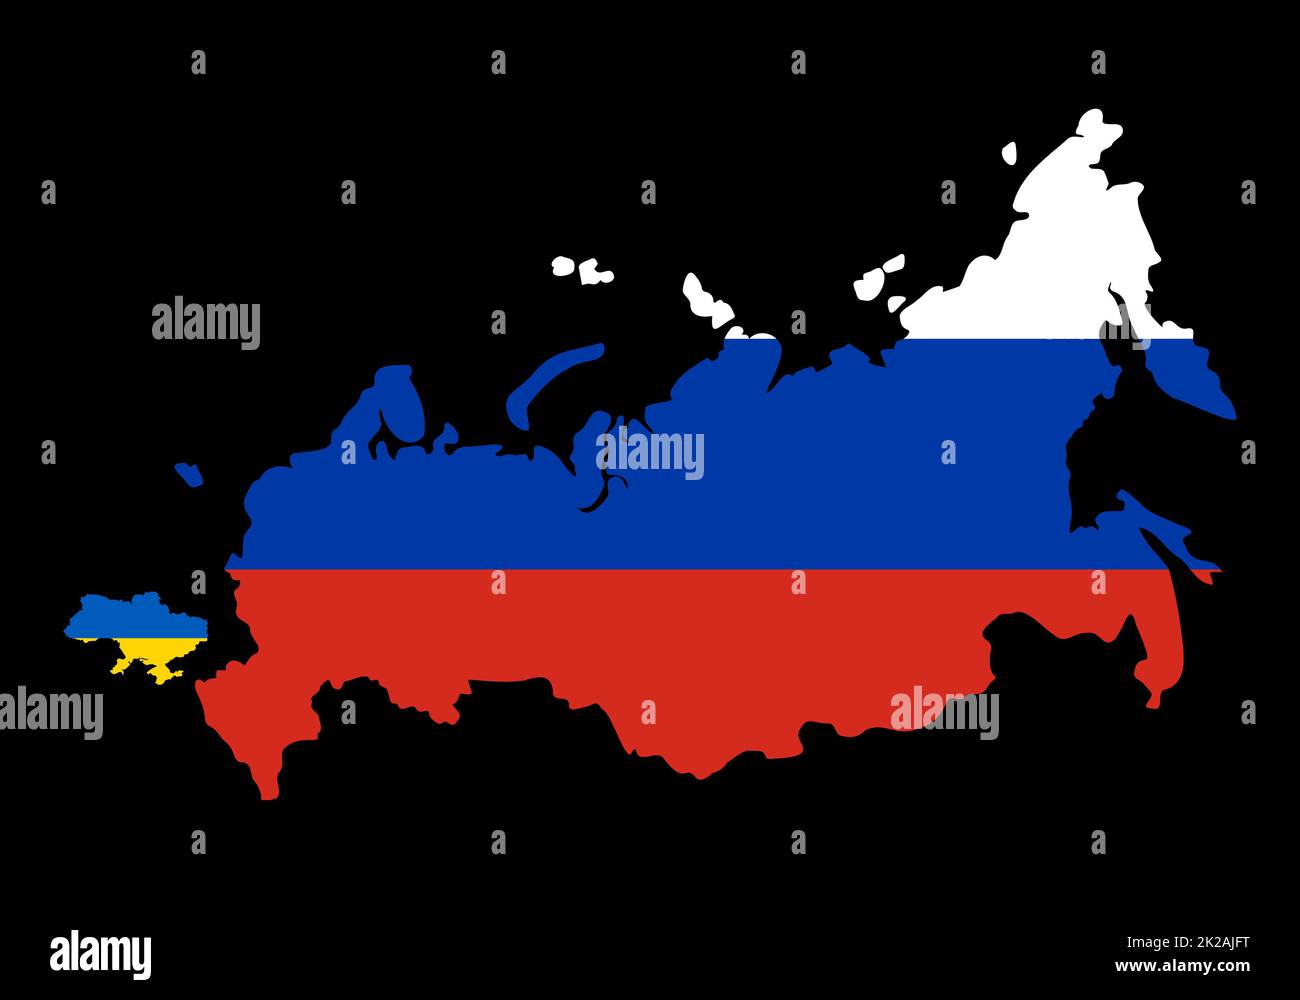 Großes Russland gegen kleine Ukraine. Vergleichen Sie die Größen der Länderkarte auf der Weltkarte. Grenzen Russlands und der Ukraine. Darstellung der Grenzen der Kriegsmöglichkeit. Russland begann einen massiven Angriff auf die Ukraine. Stockfoto